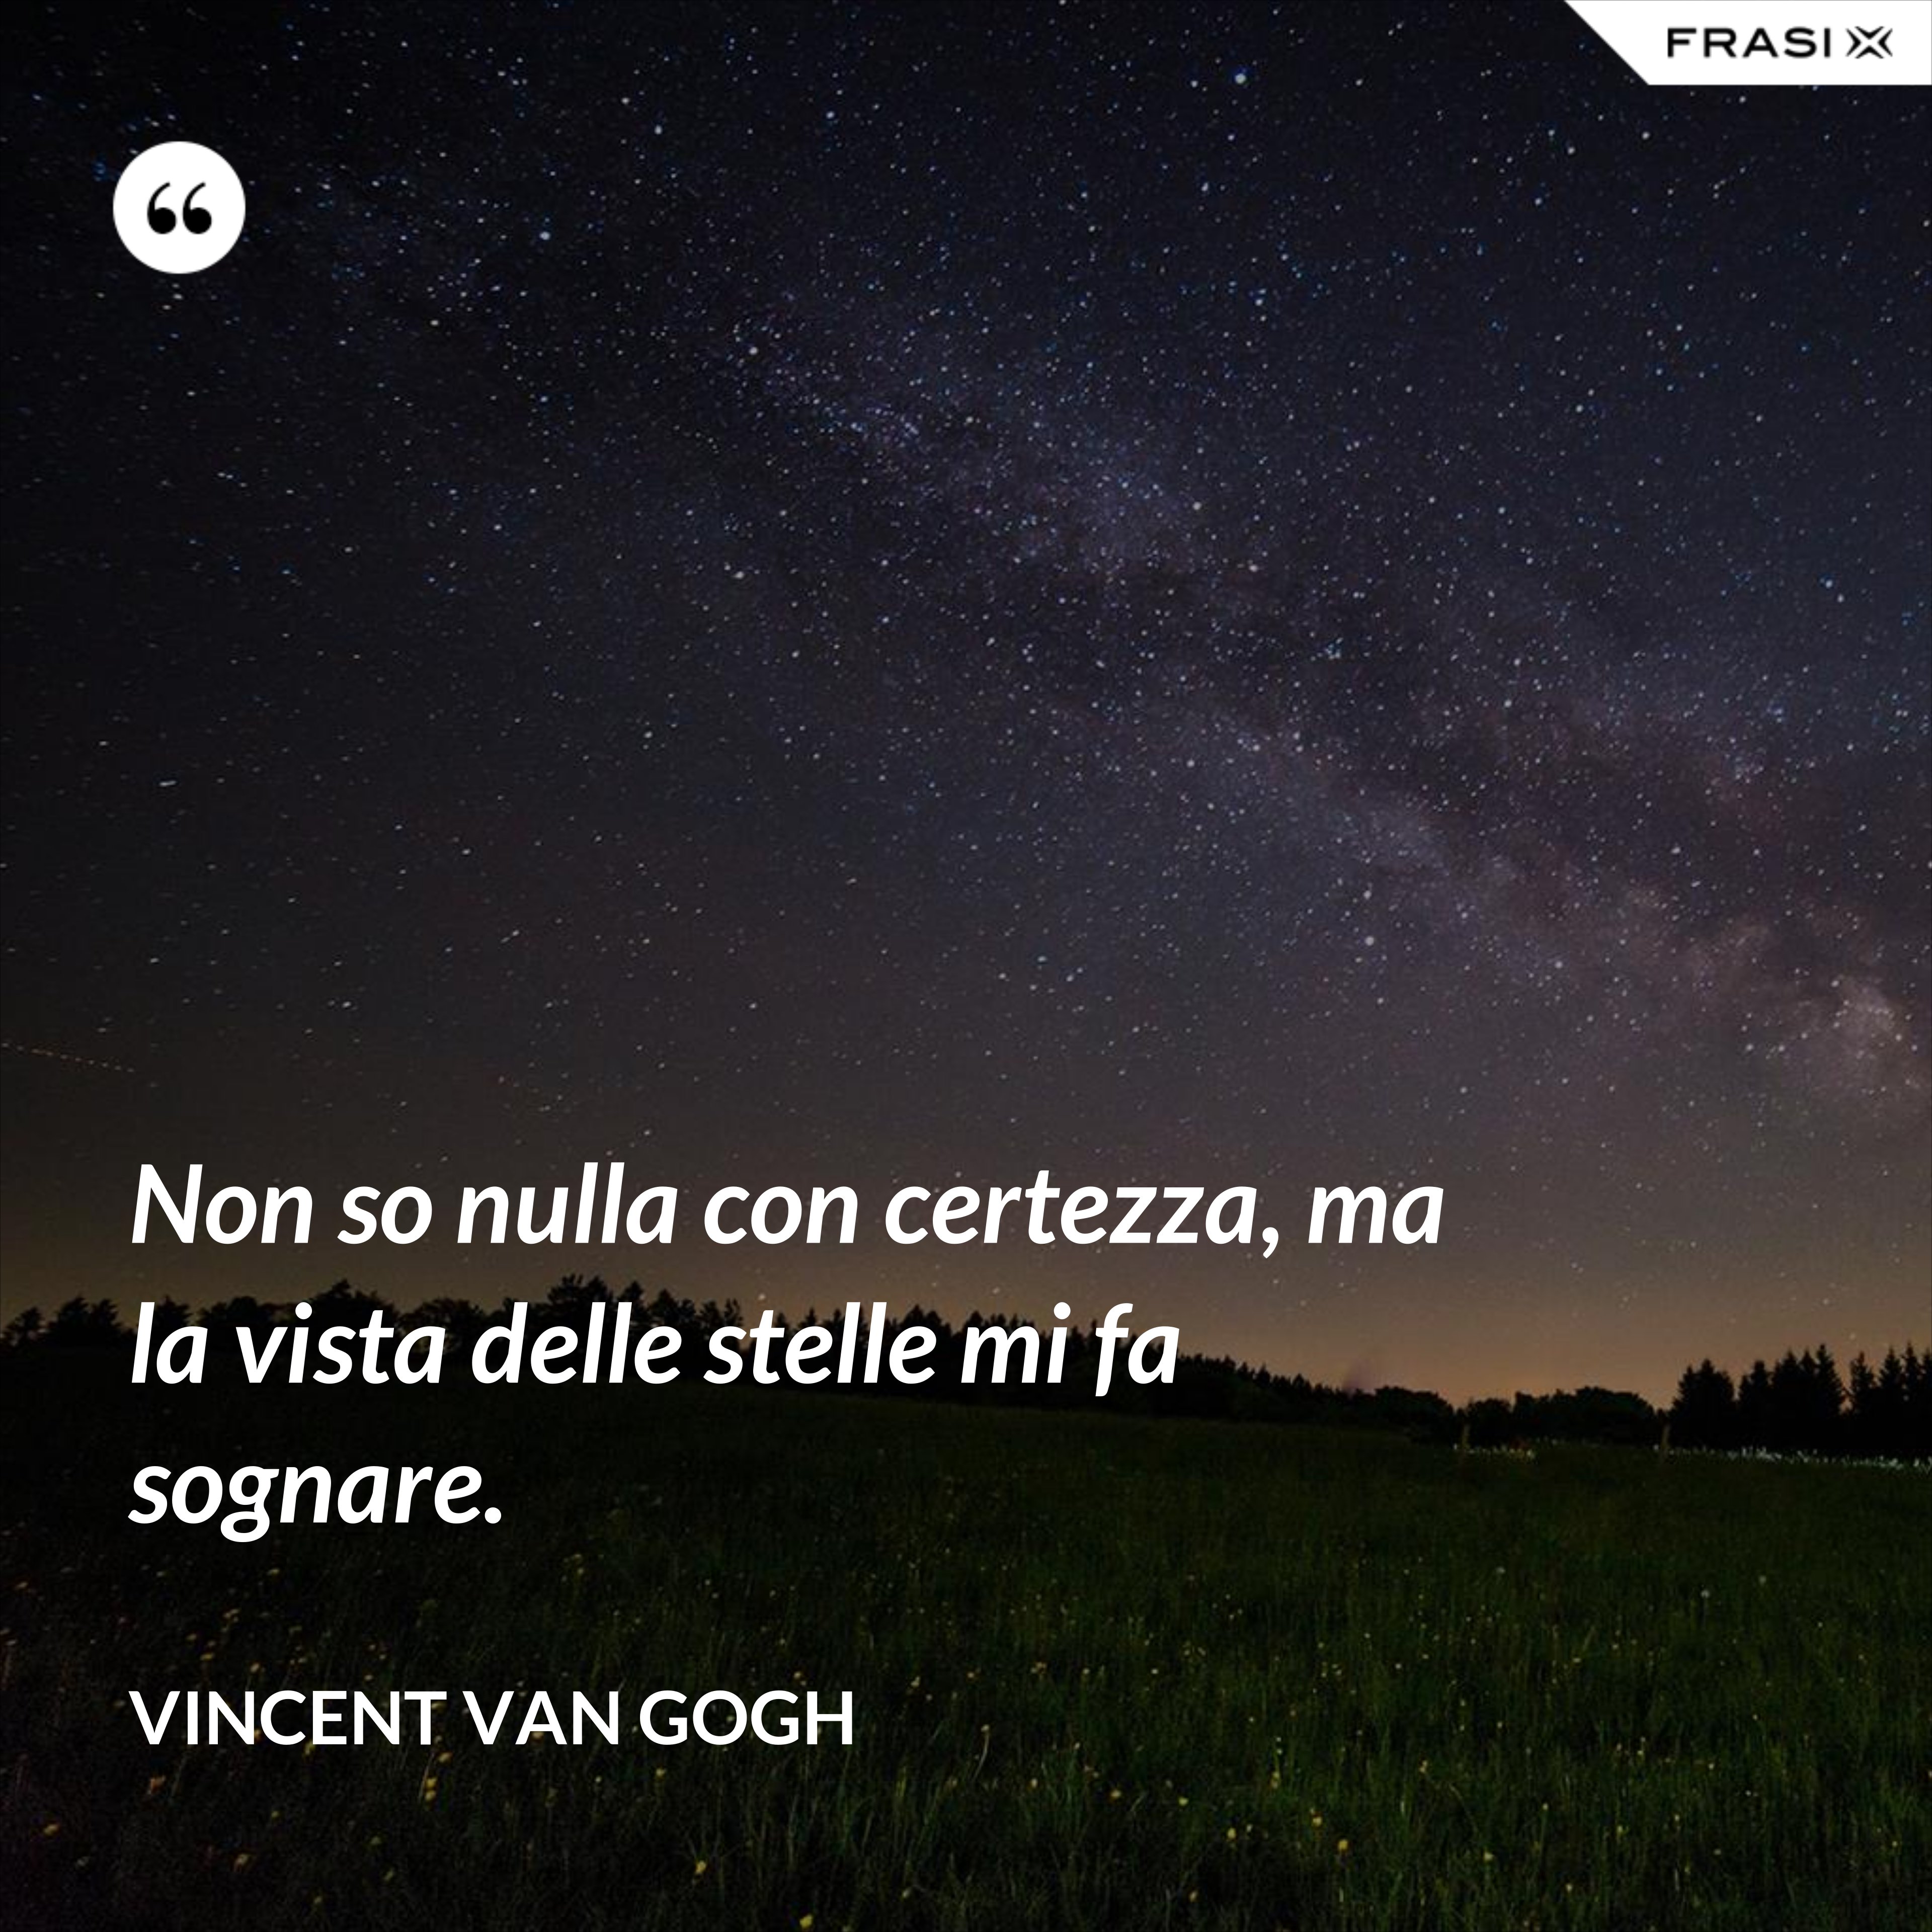 Non so nulla con certezza, ma la vista delle stelle mi fa sognare. - Vincent Van Gogh